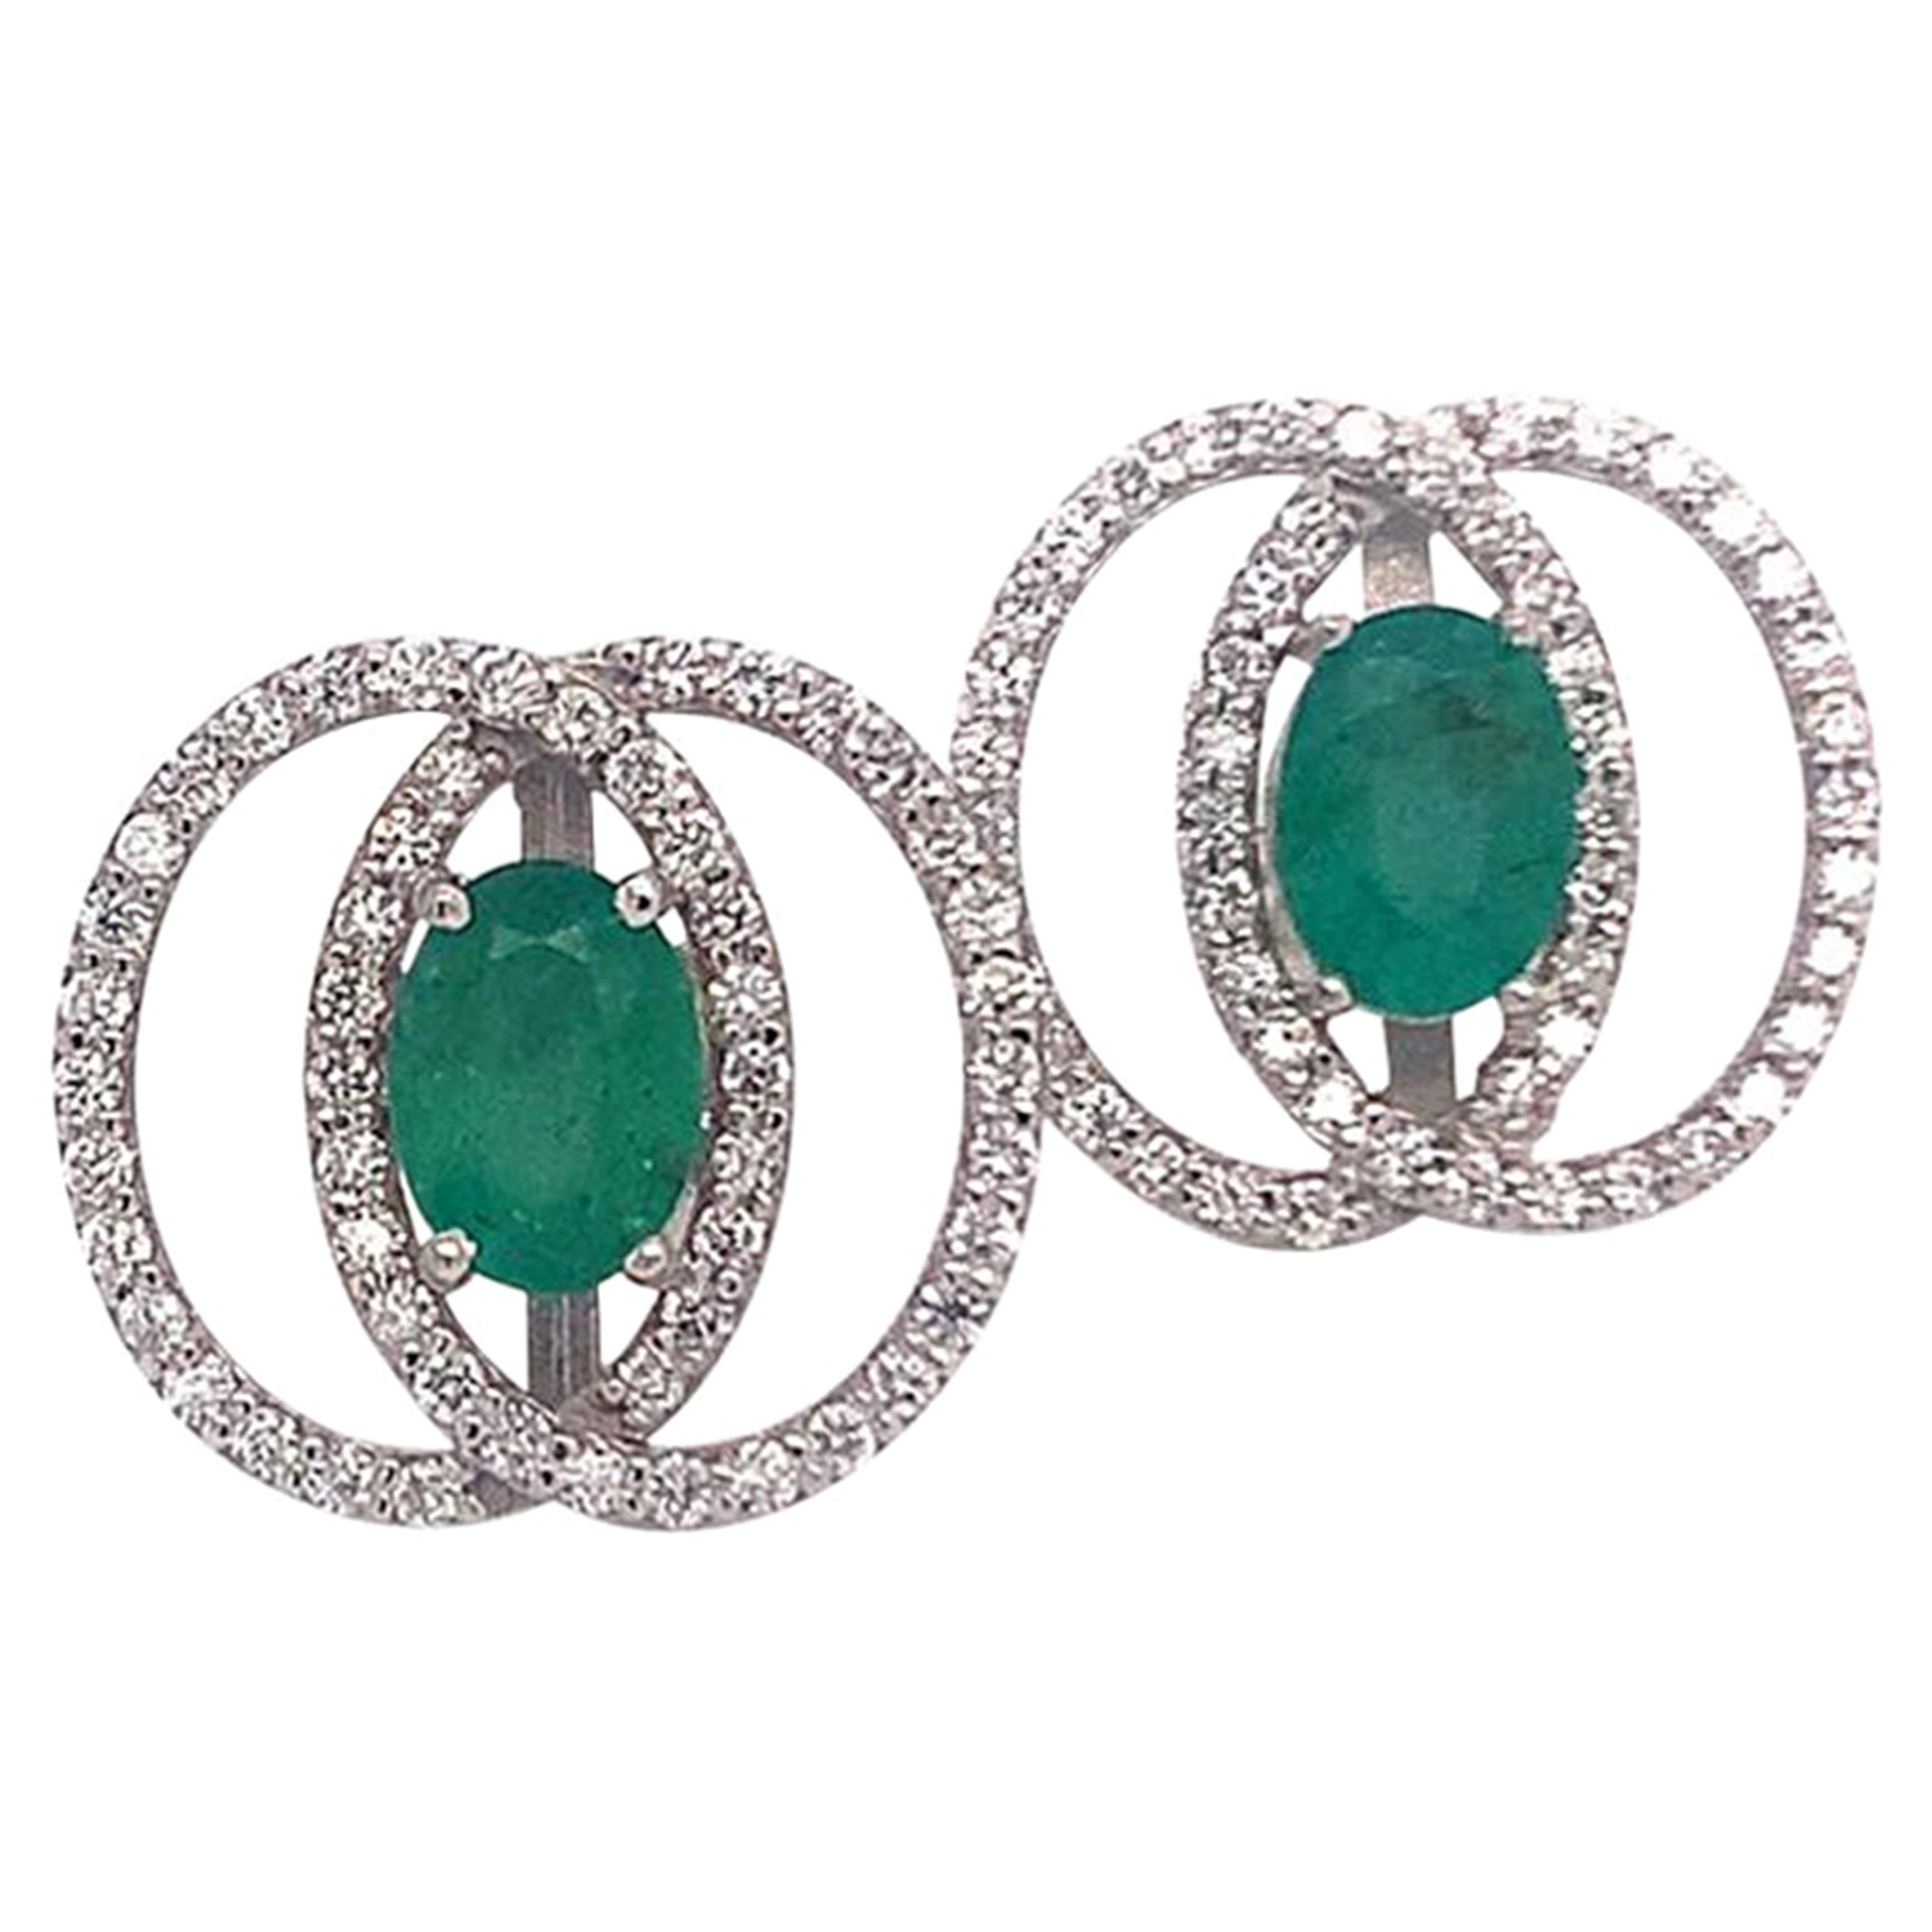 Diamond Emerald Earrings 14k White Gold 2.16 TCW Certified For Sale